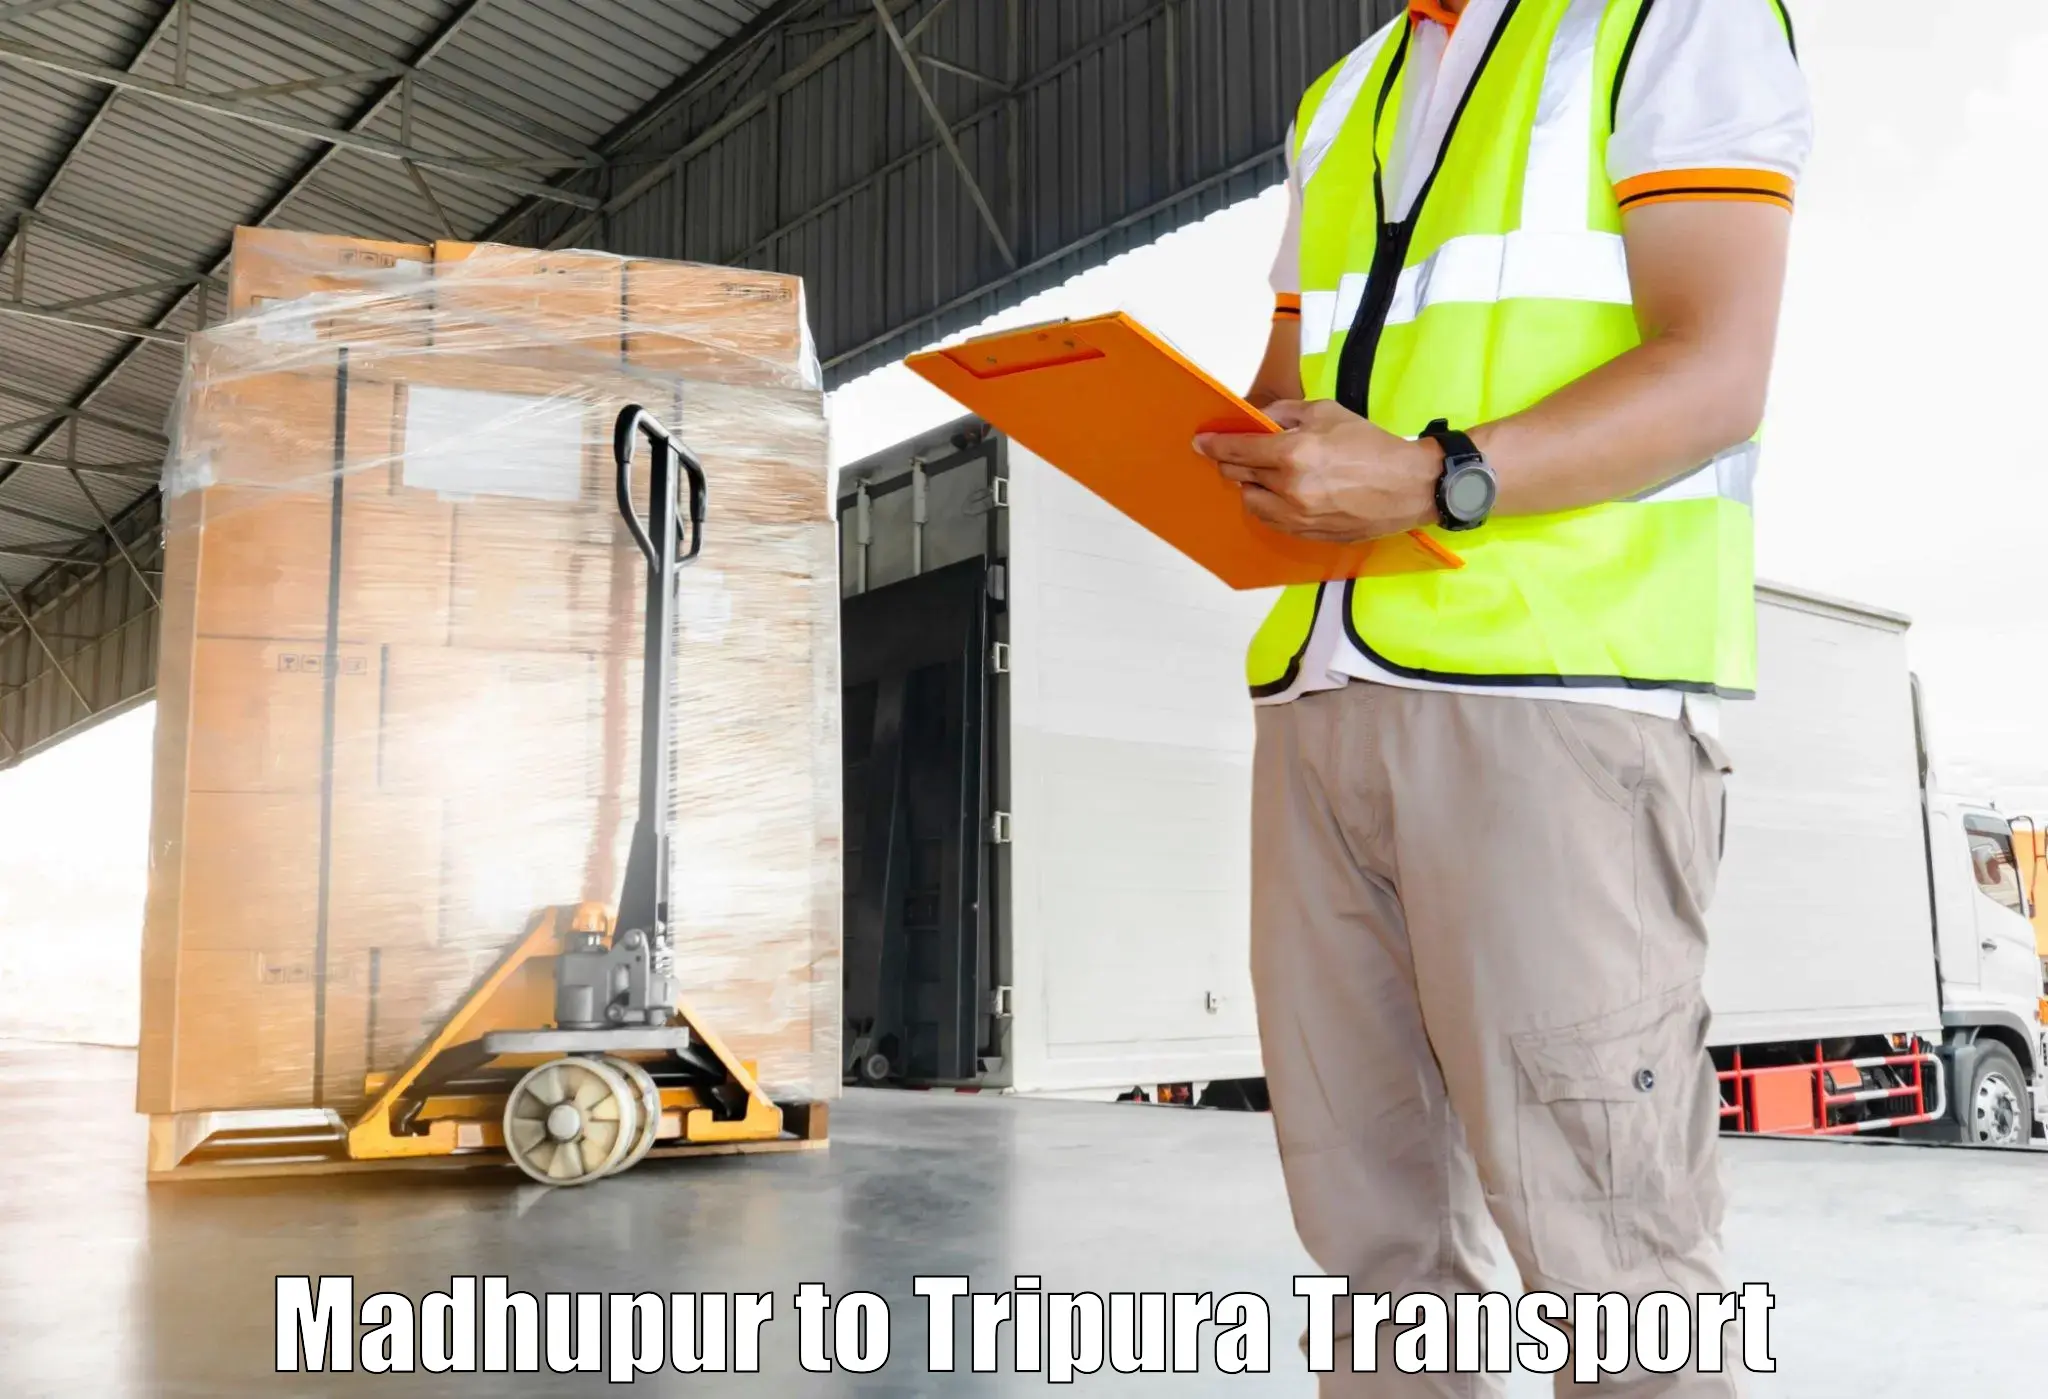 Intercity transport Madhupur to Kailashahar